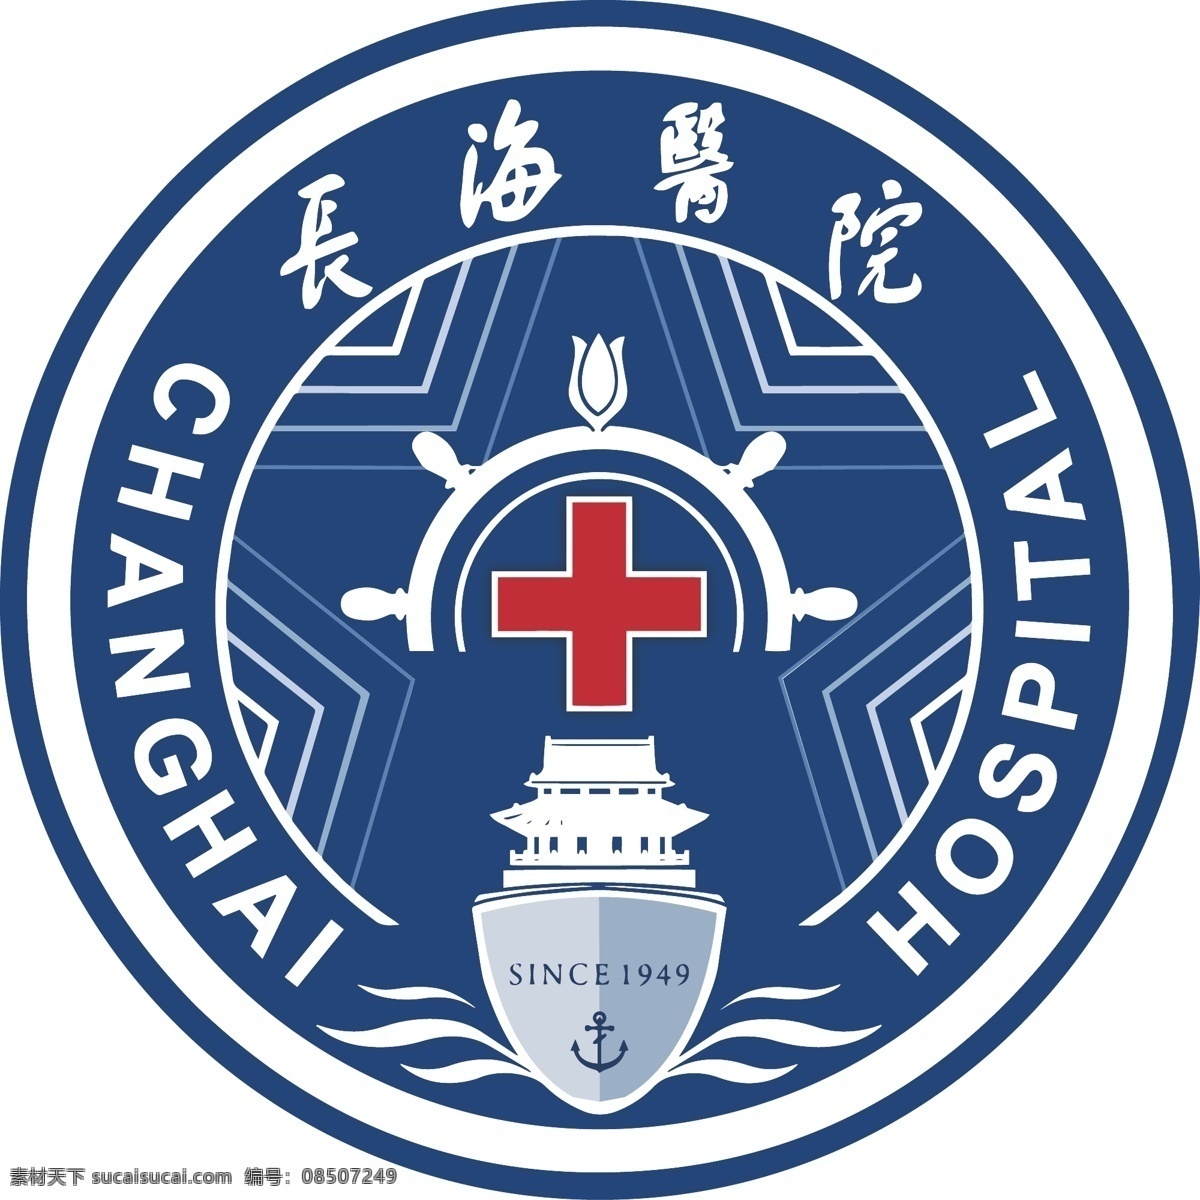 长海医院 最新 logo 上海长海医院 长海医院标志 标识标志图标 矢量 logo设计